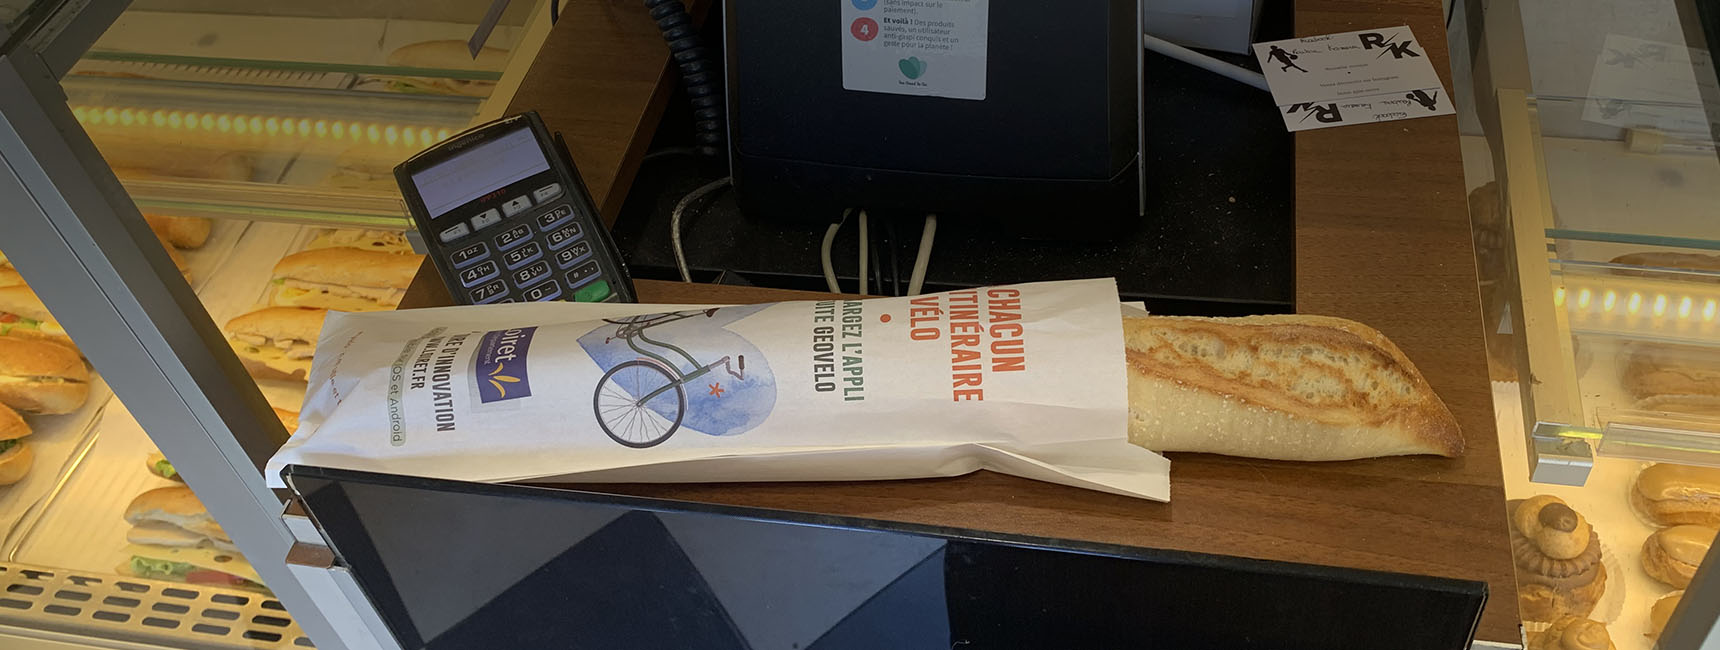 Affi'pain sac à pain publicitaire Conseil départemental du Loiret - Keemia Tours agence de marketing locale en région Centre Normandie